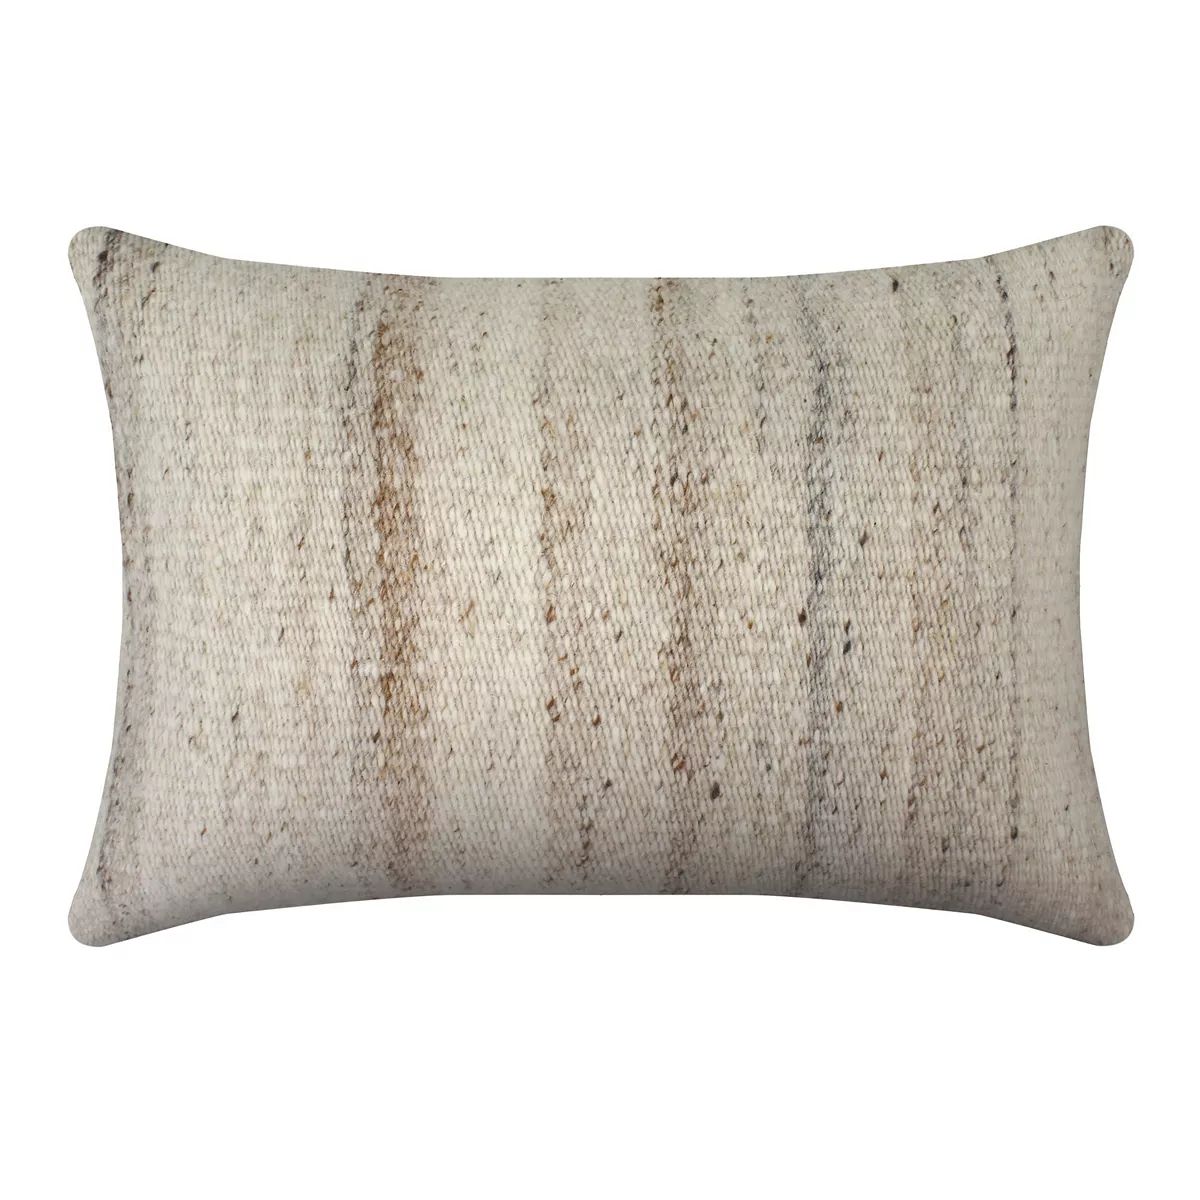 Sonoma Goods For Life® Gray Woven Striped 14" x 20" Throw Pillow | Kohl's